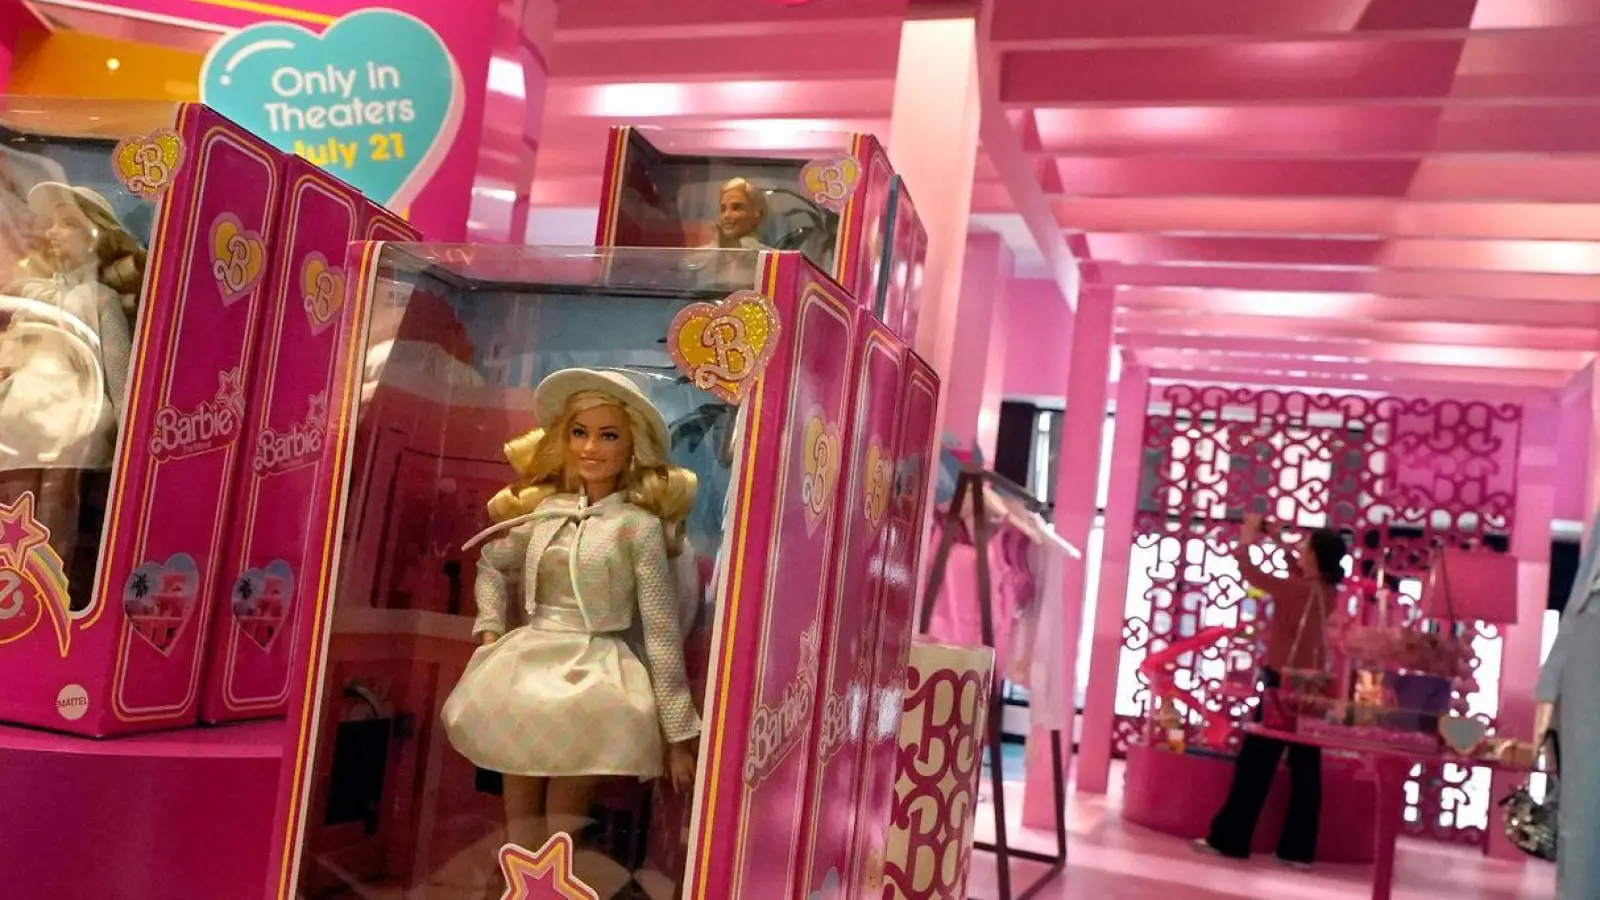 Der „Barbie“-Film hat weltweit mehr als eine Milliarde Dollar eingespielt und auch das zuvor oft schwächelnde Interesse an Barbie-Produkten angekurbelt. (Foto: Richard Drew/AP)